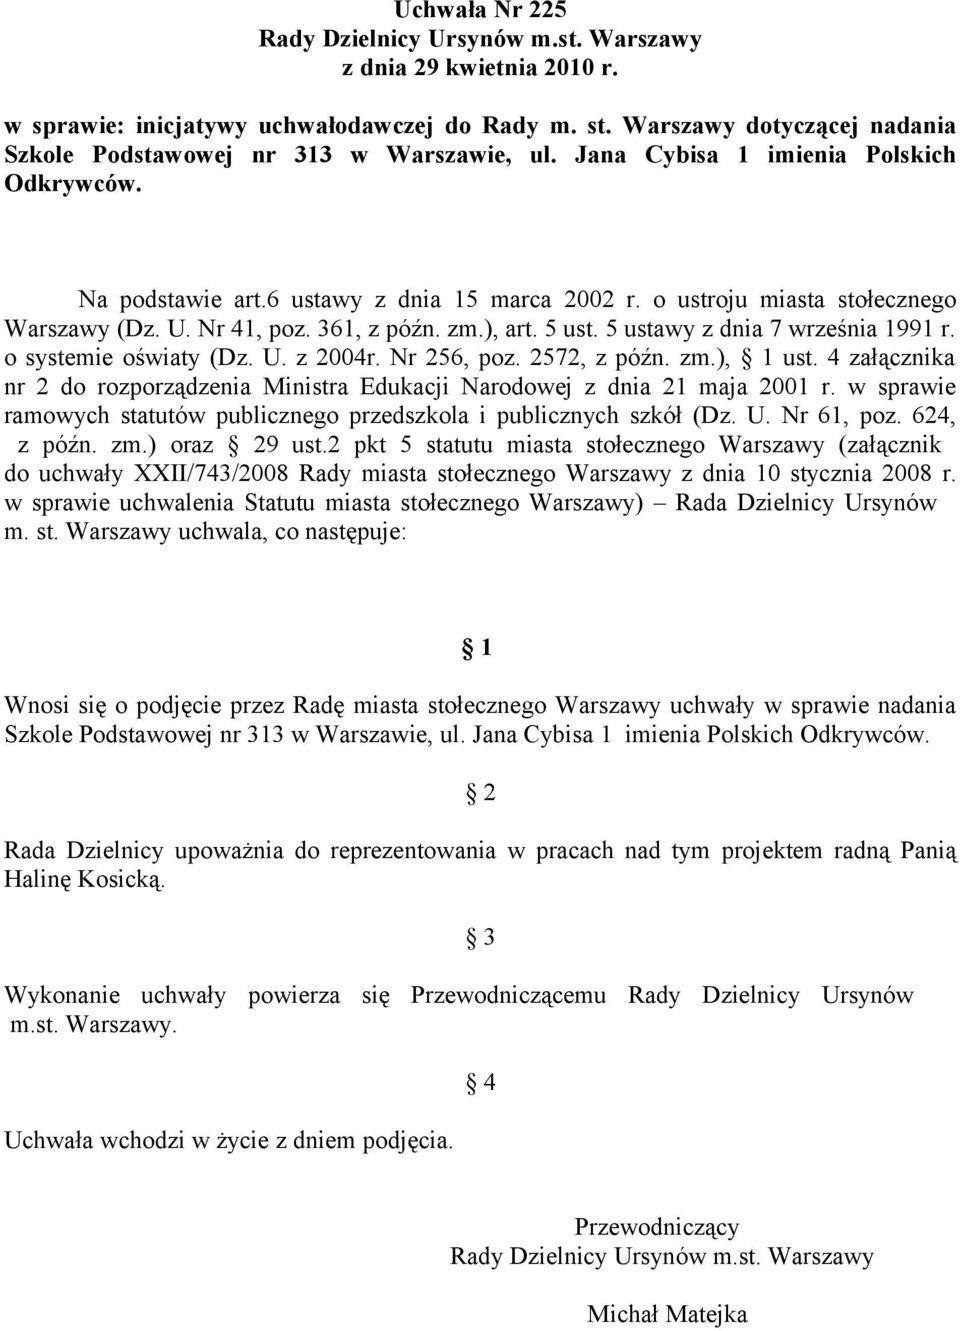 o ustroju miasta stołecznego Warszawy (Dz. U. Nr 41, poz. 361, z późn. zm.), art. 5 ust. 5 ustawy z dnia 7 września 1991 r. o systemie oświaty (Dz. U. z 2004r. Nr 256, poz. 2572, z późn. zm.), 1 ust.